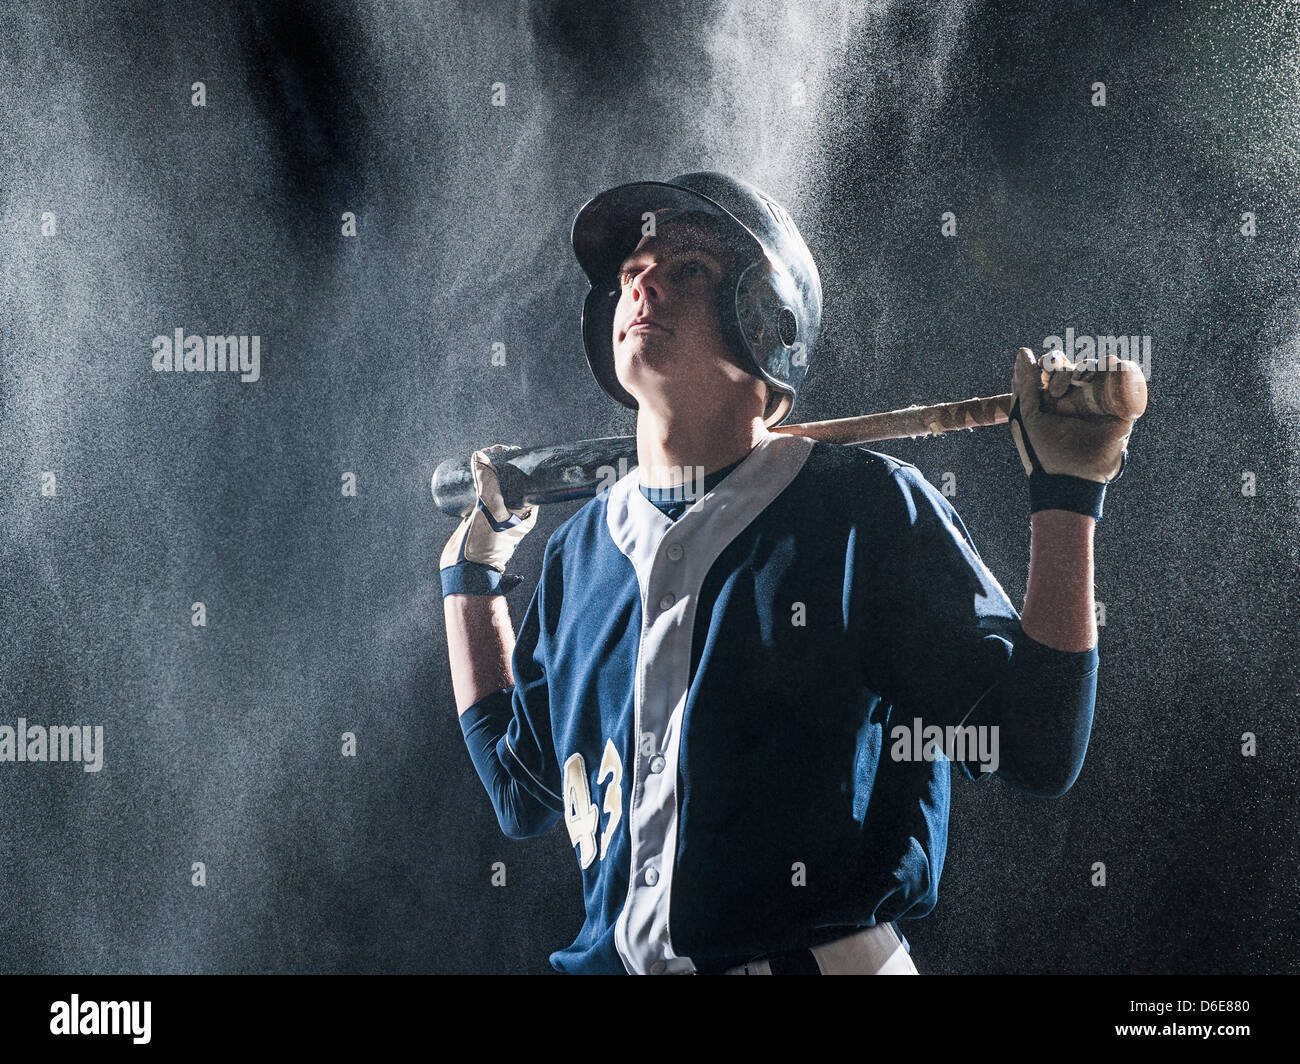 Caucasian baseball player standing in rain Stock Photo